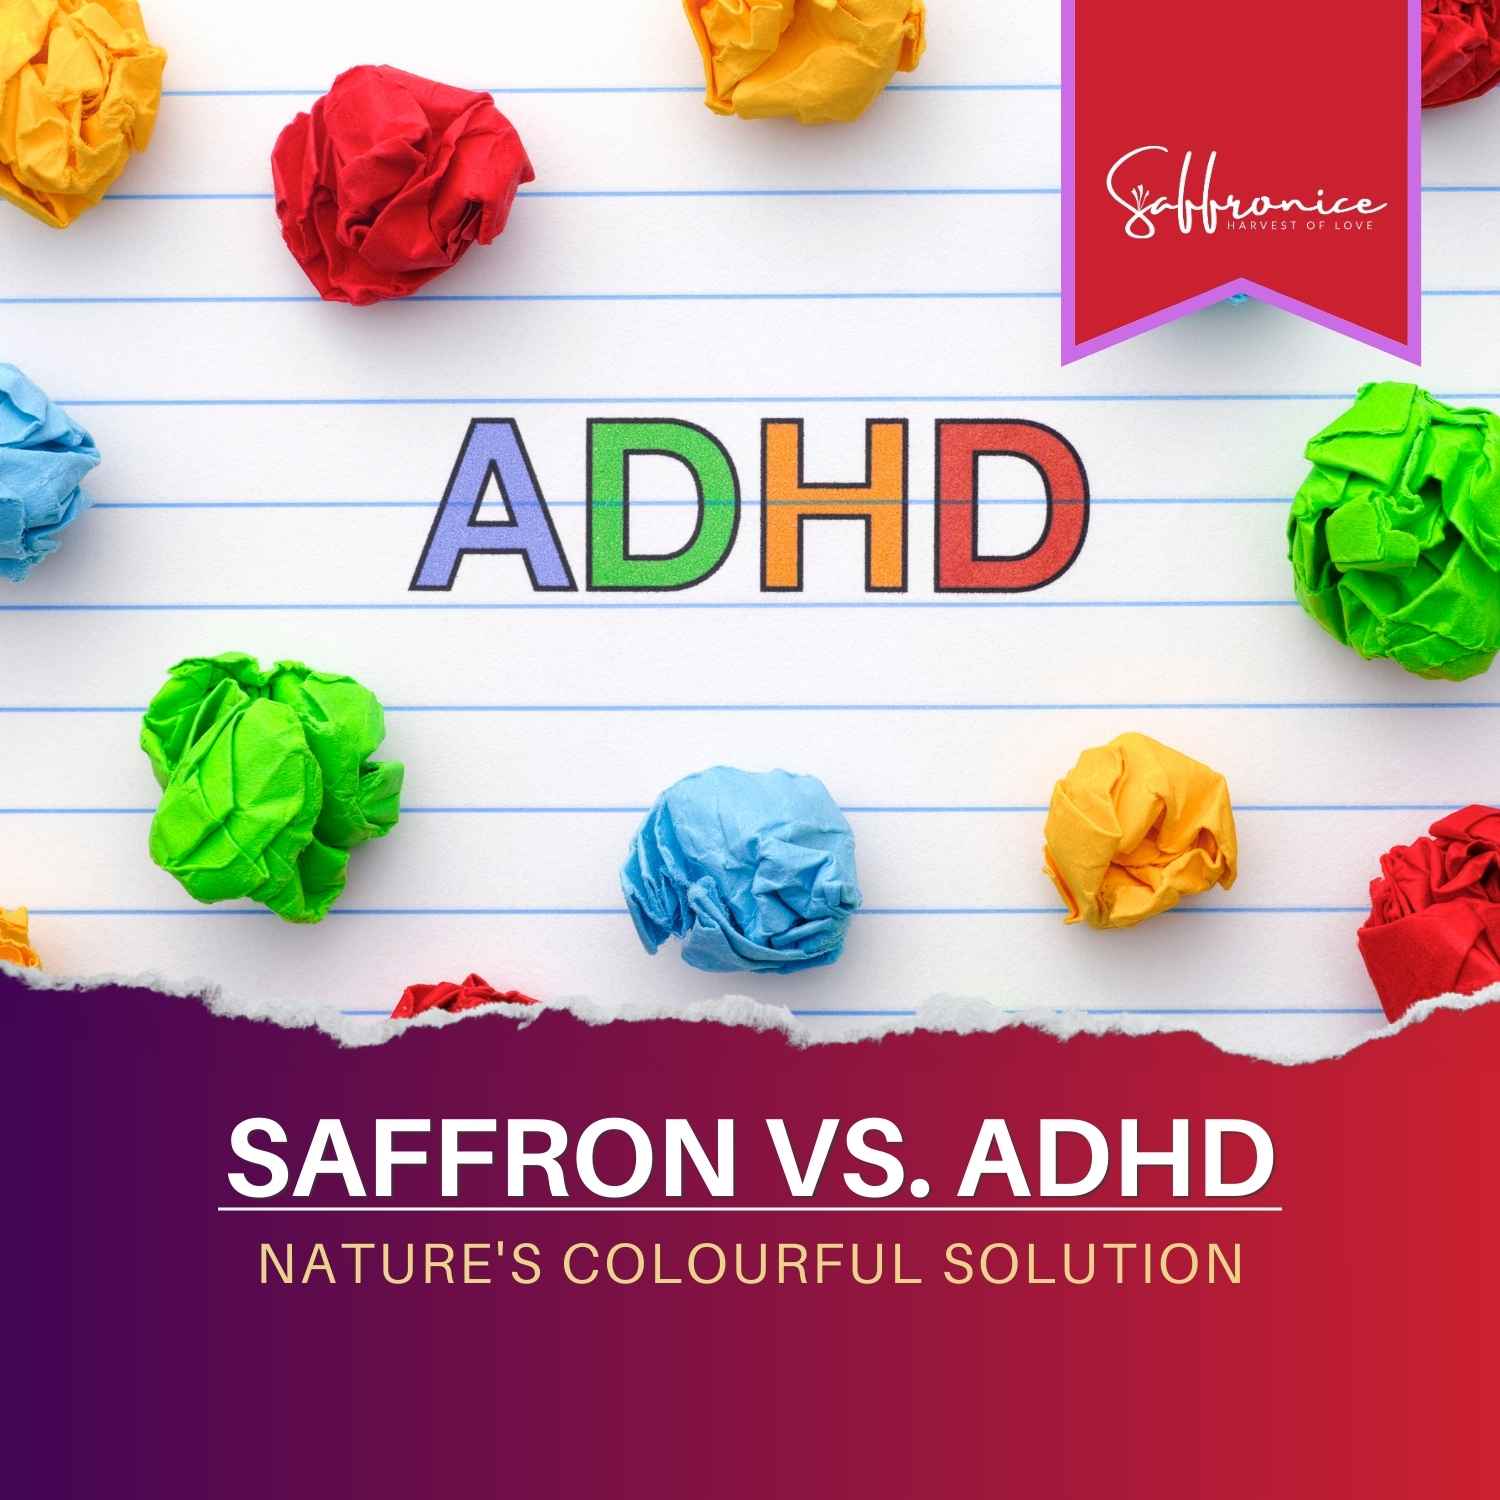 Scientific-research-saffron-ADHD-treatment